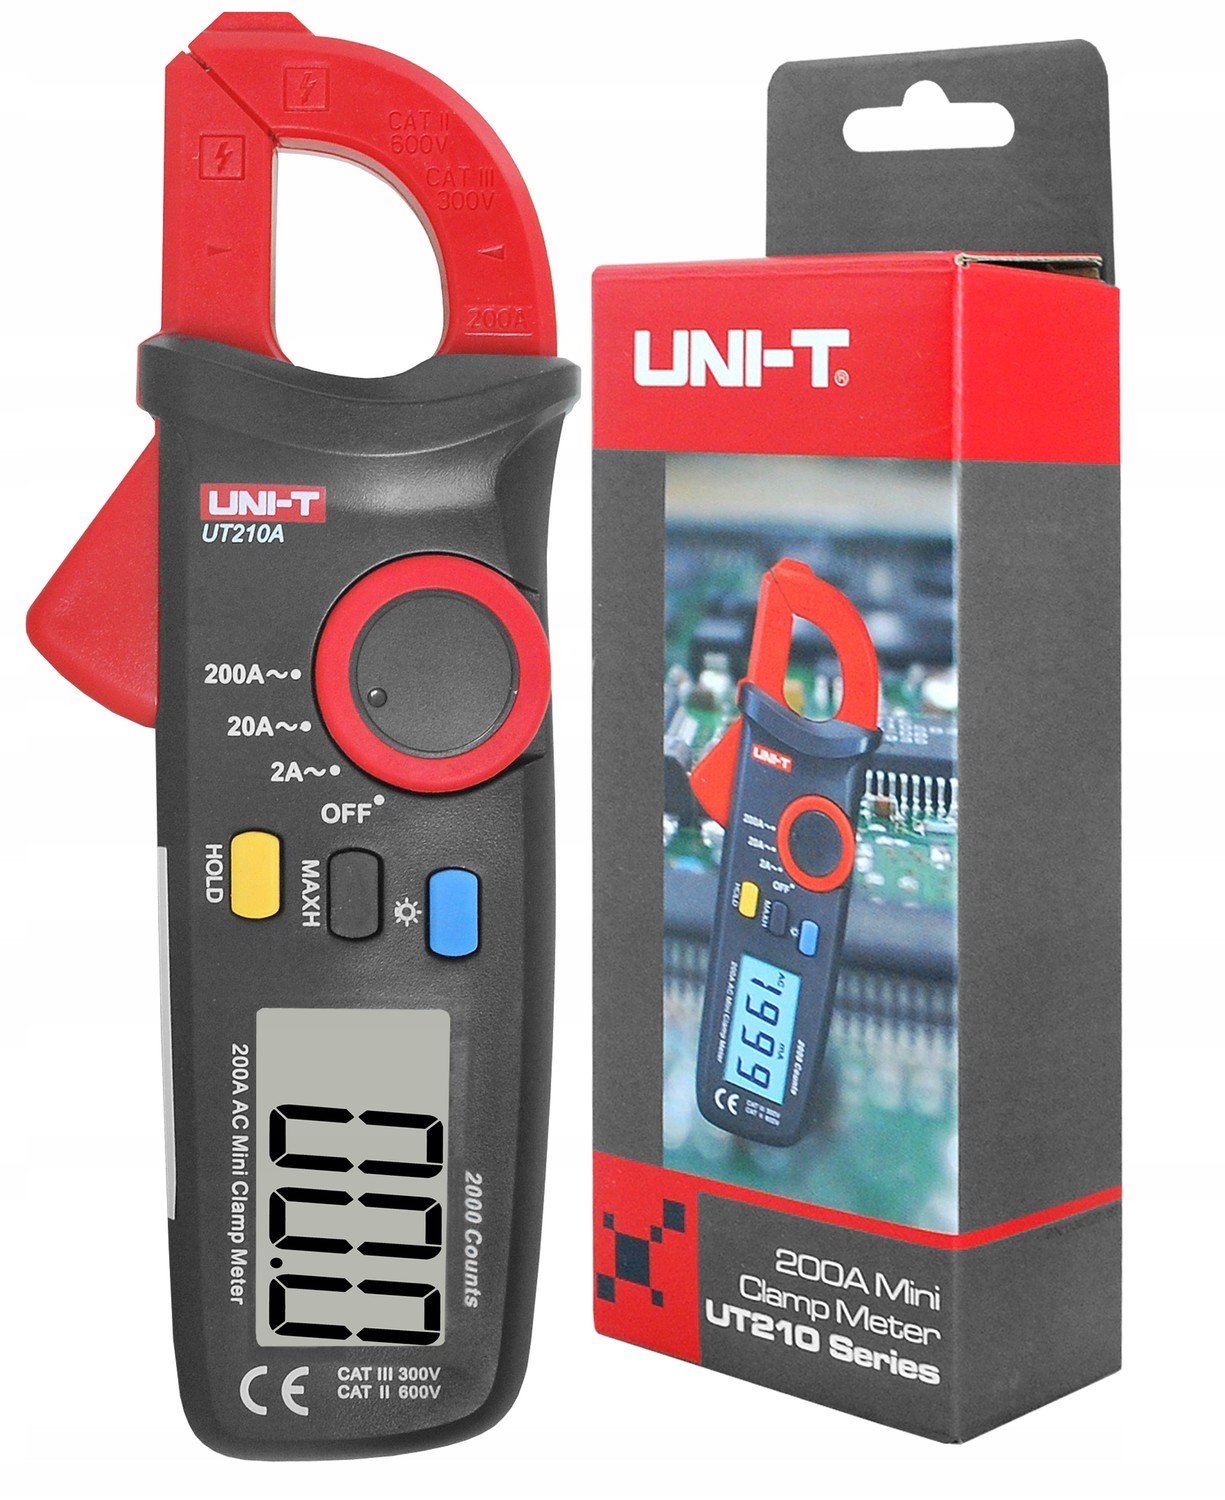 Klešťový měřič Uni-t UT210A, Ac Multimetr